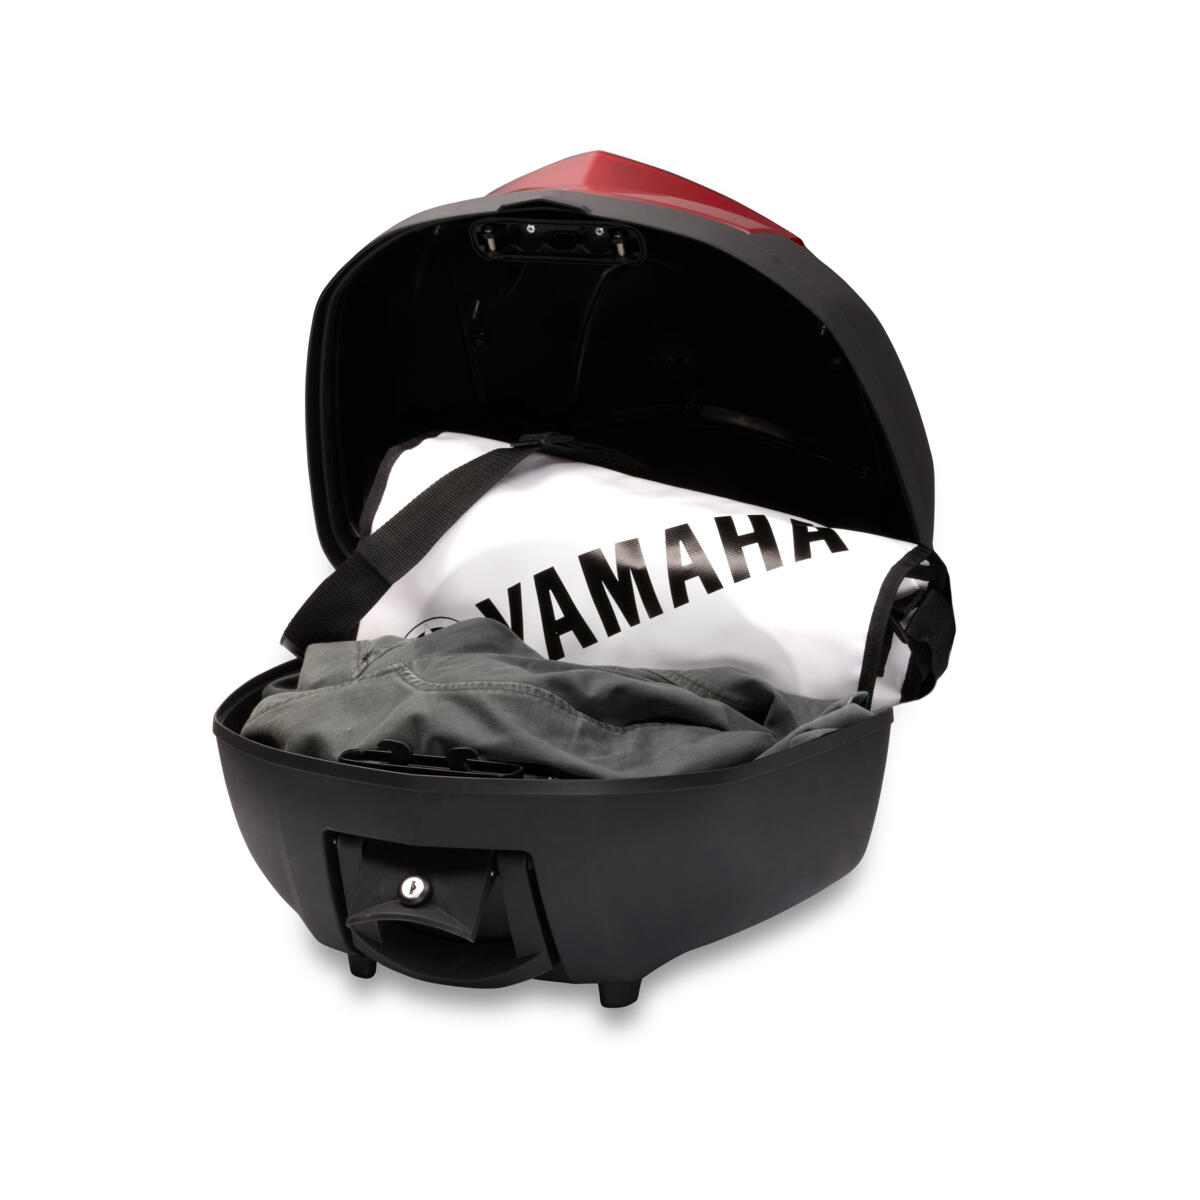 Yamaha'nızda ekstra bagaj/saklama kapasitesi sağlayan kaliteli arka çanta.